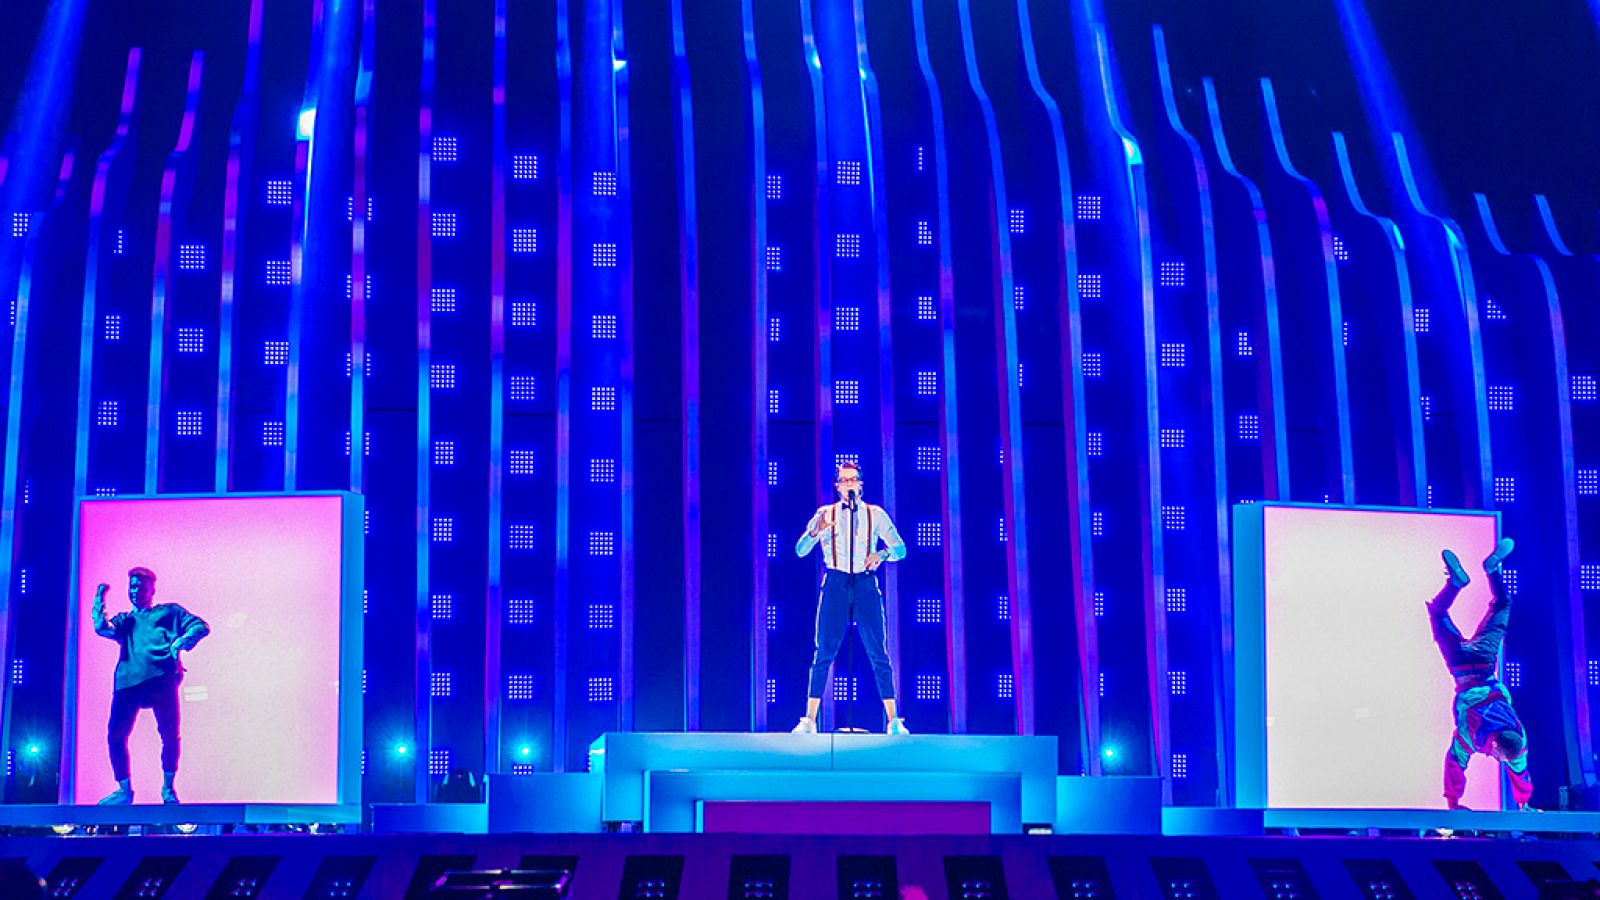 Eurovisión - República Checa: Mikolas Josef canta "Lie to me" en la final de Eurovisión 2018